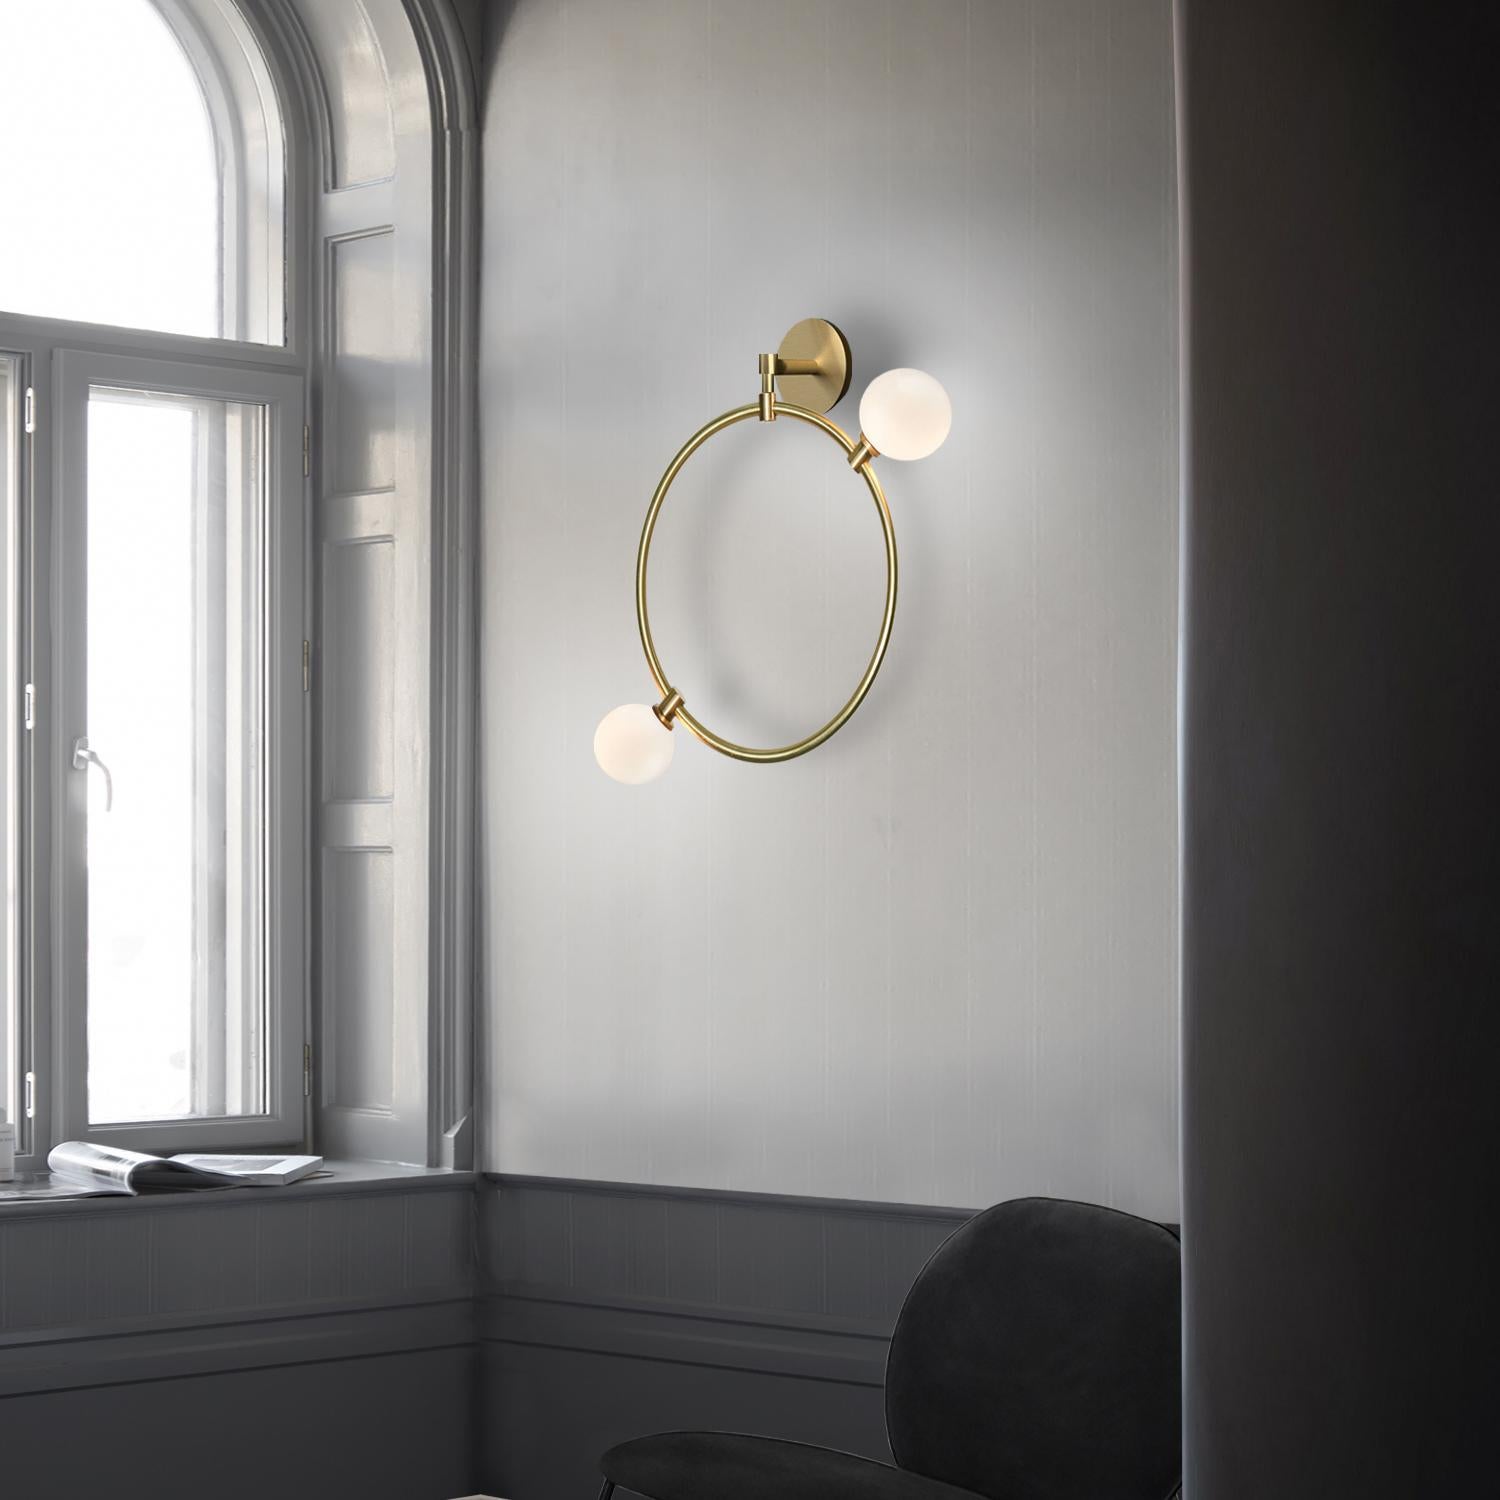 Ein dekoratives Beleuchtungselement, inspiriert von der Vorstellung, dass das Licht durch einen offenen Raum fließt. Die modulare Kollektion besteht aus weißen Kristallglaskugeln, die an zarten Messingringen befestigt sind. 

Die Ringe können als